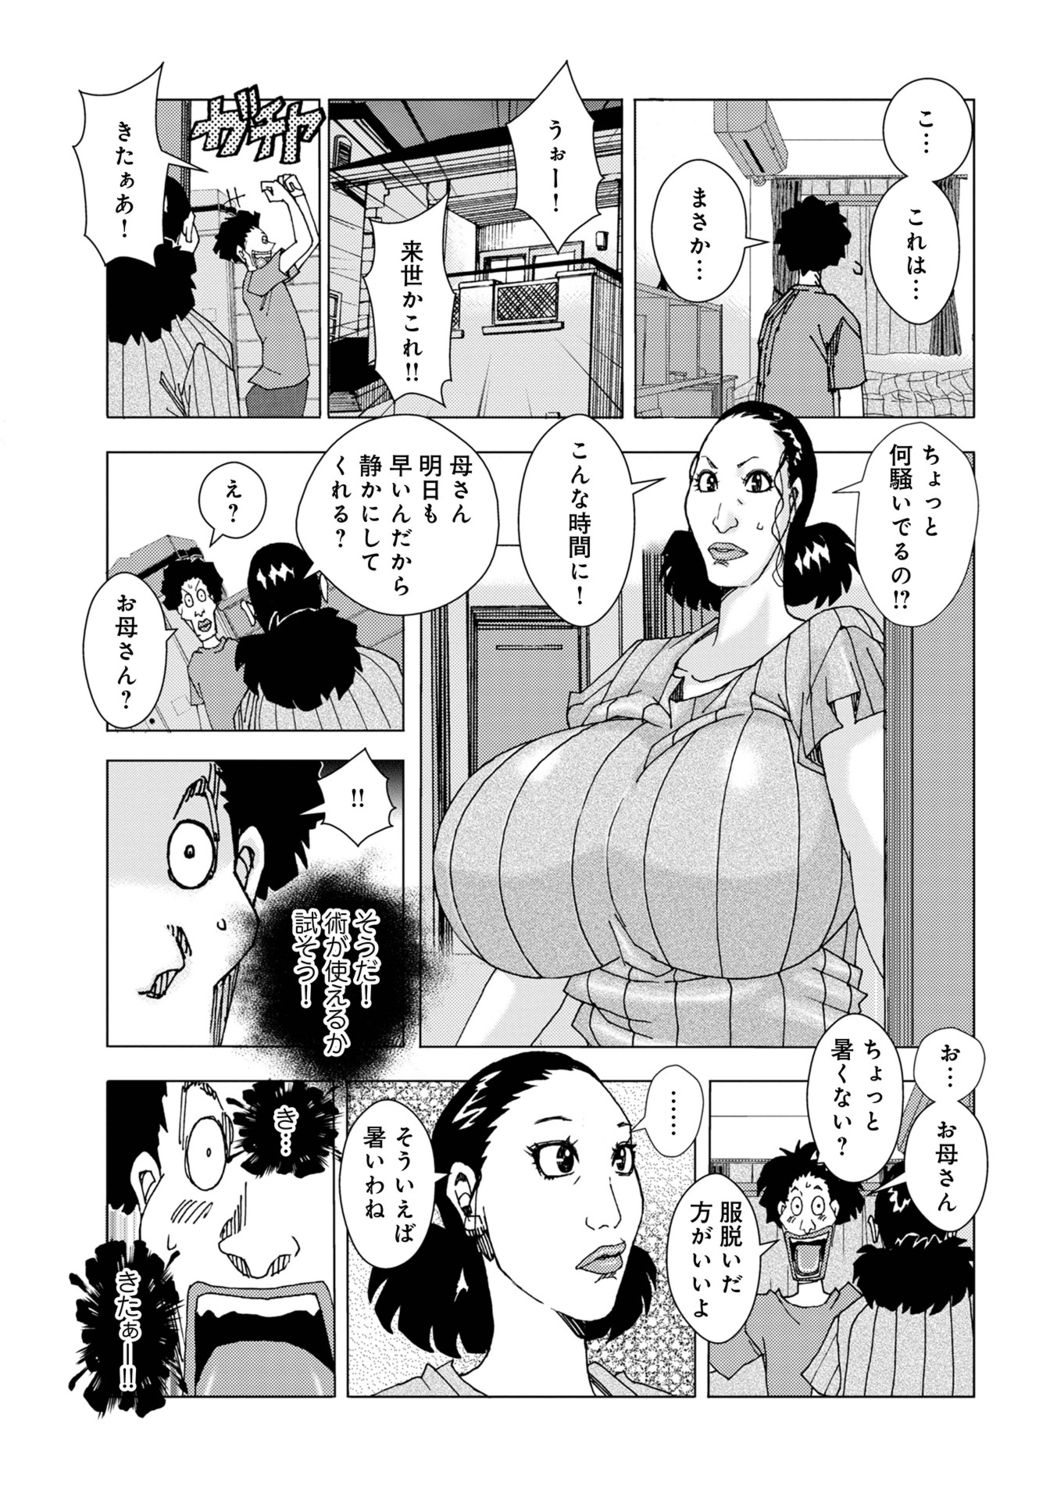 [アンソロジー] WEB版コミック激ヤバ! Vol.150